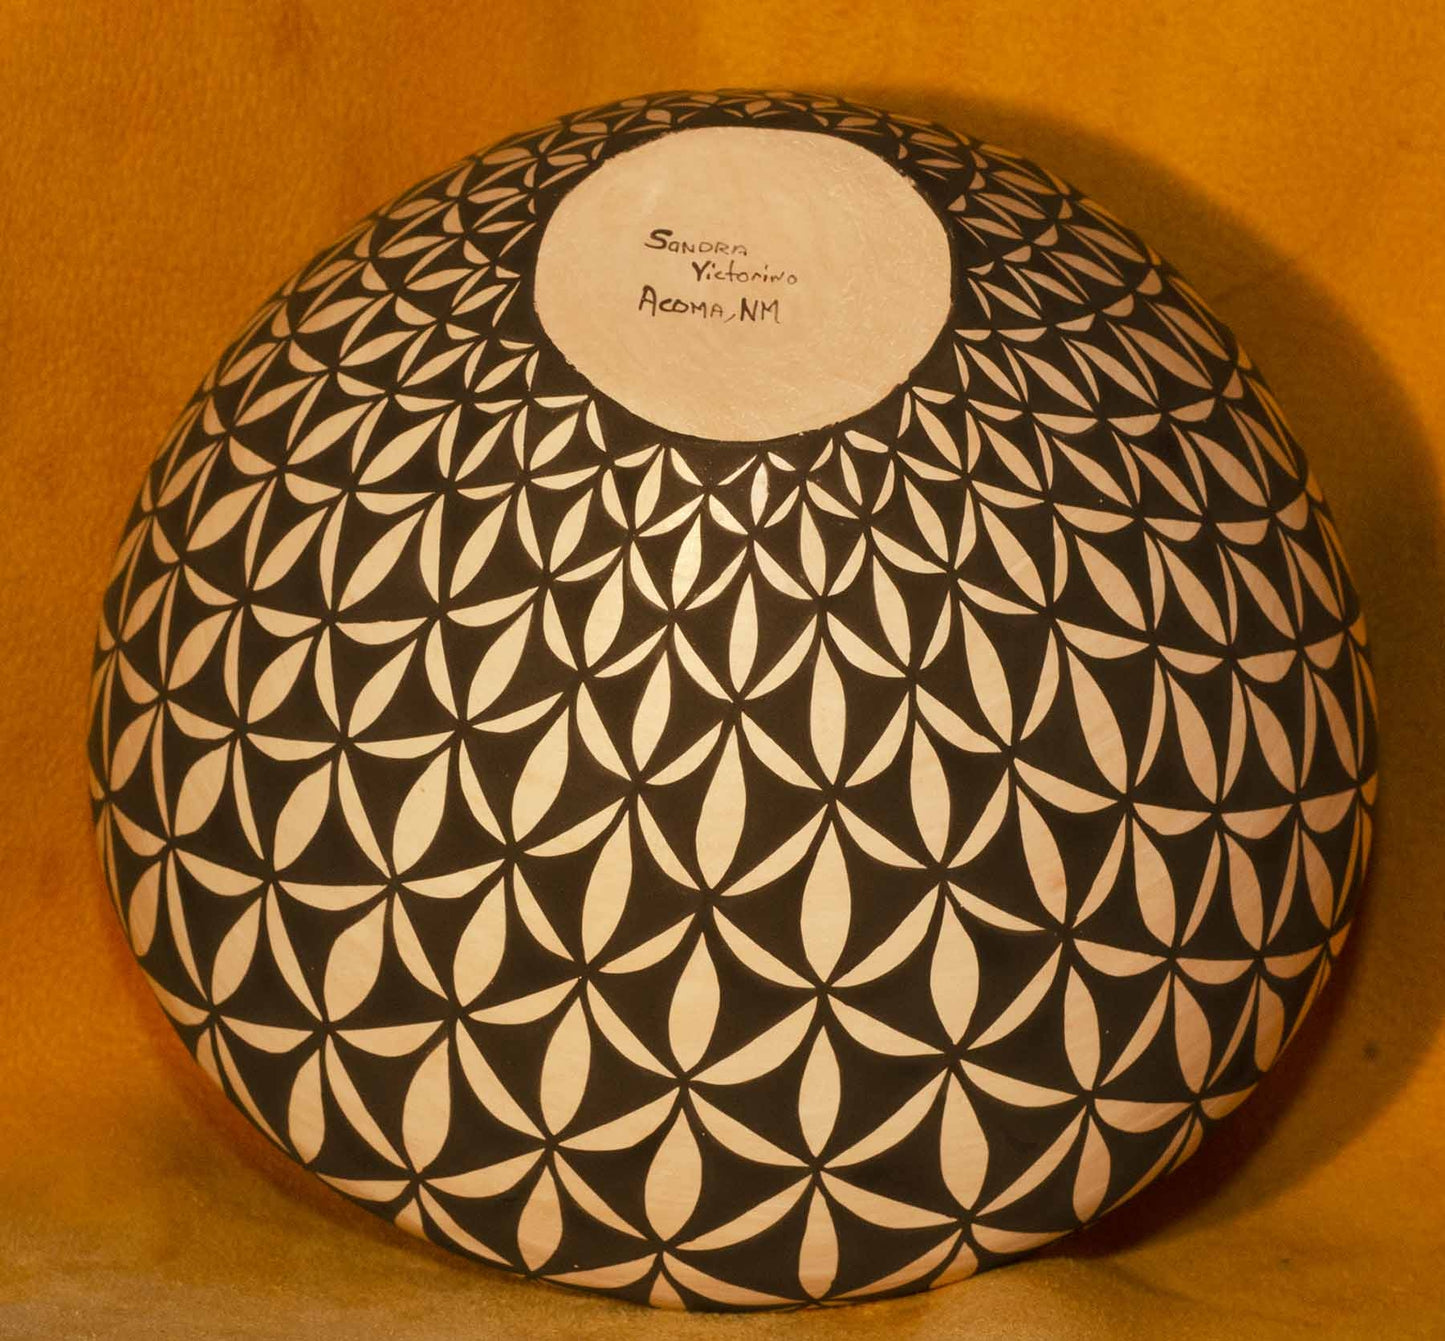 Acoma Seed Bowl by Sandra Victorino